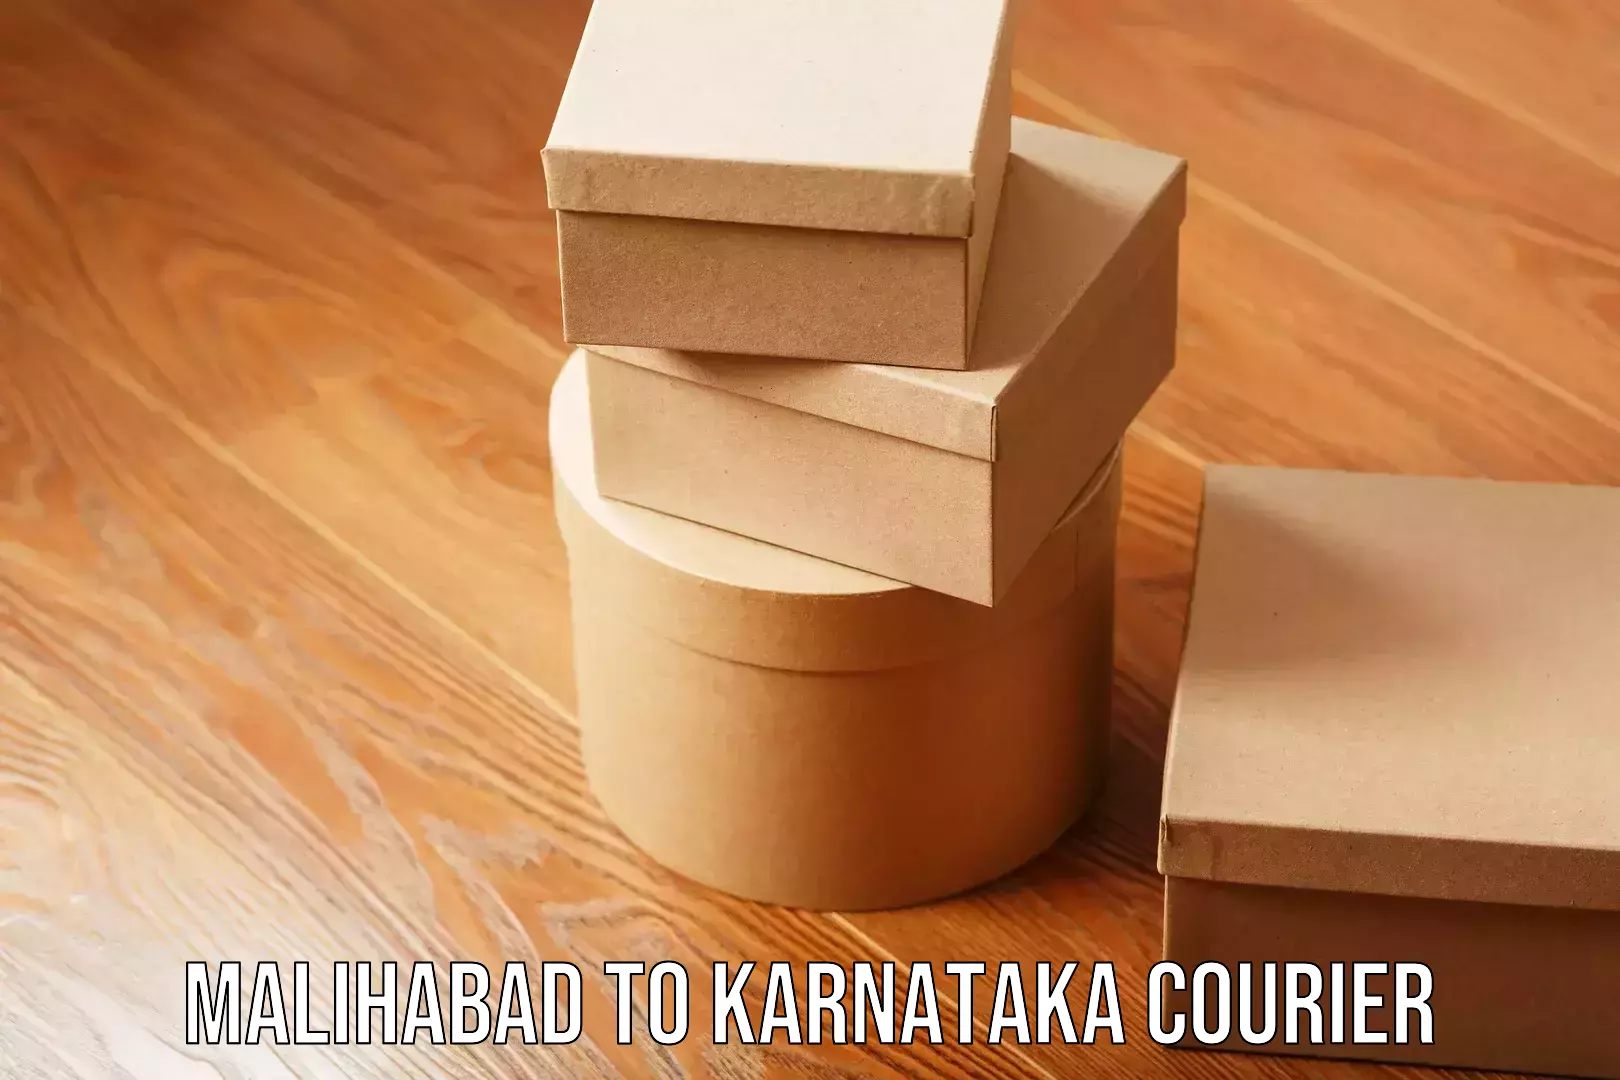 Efficient moving and packing Malihabad to Karnataka